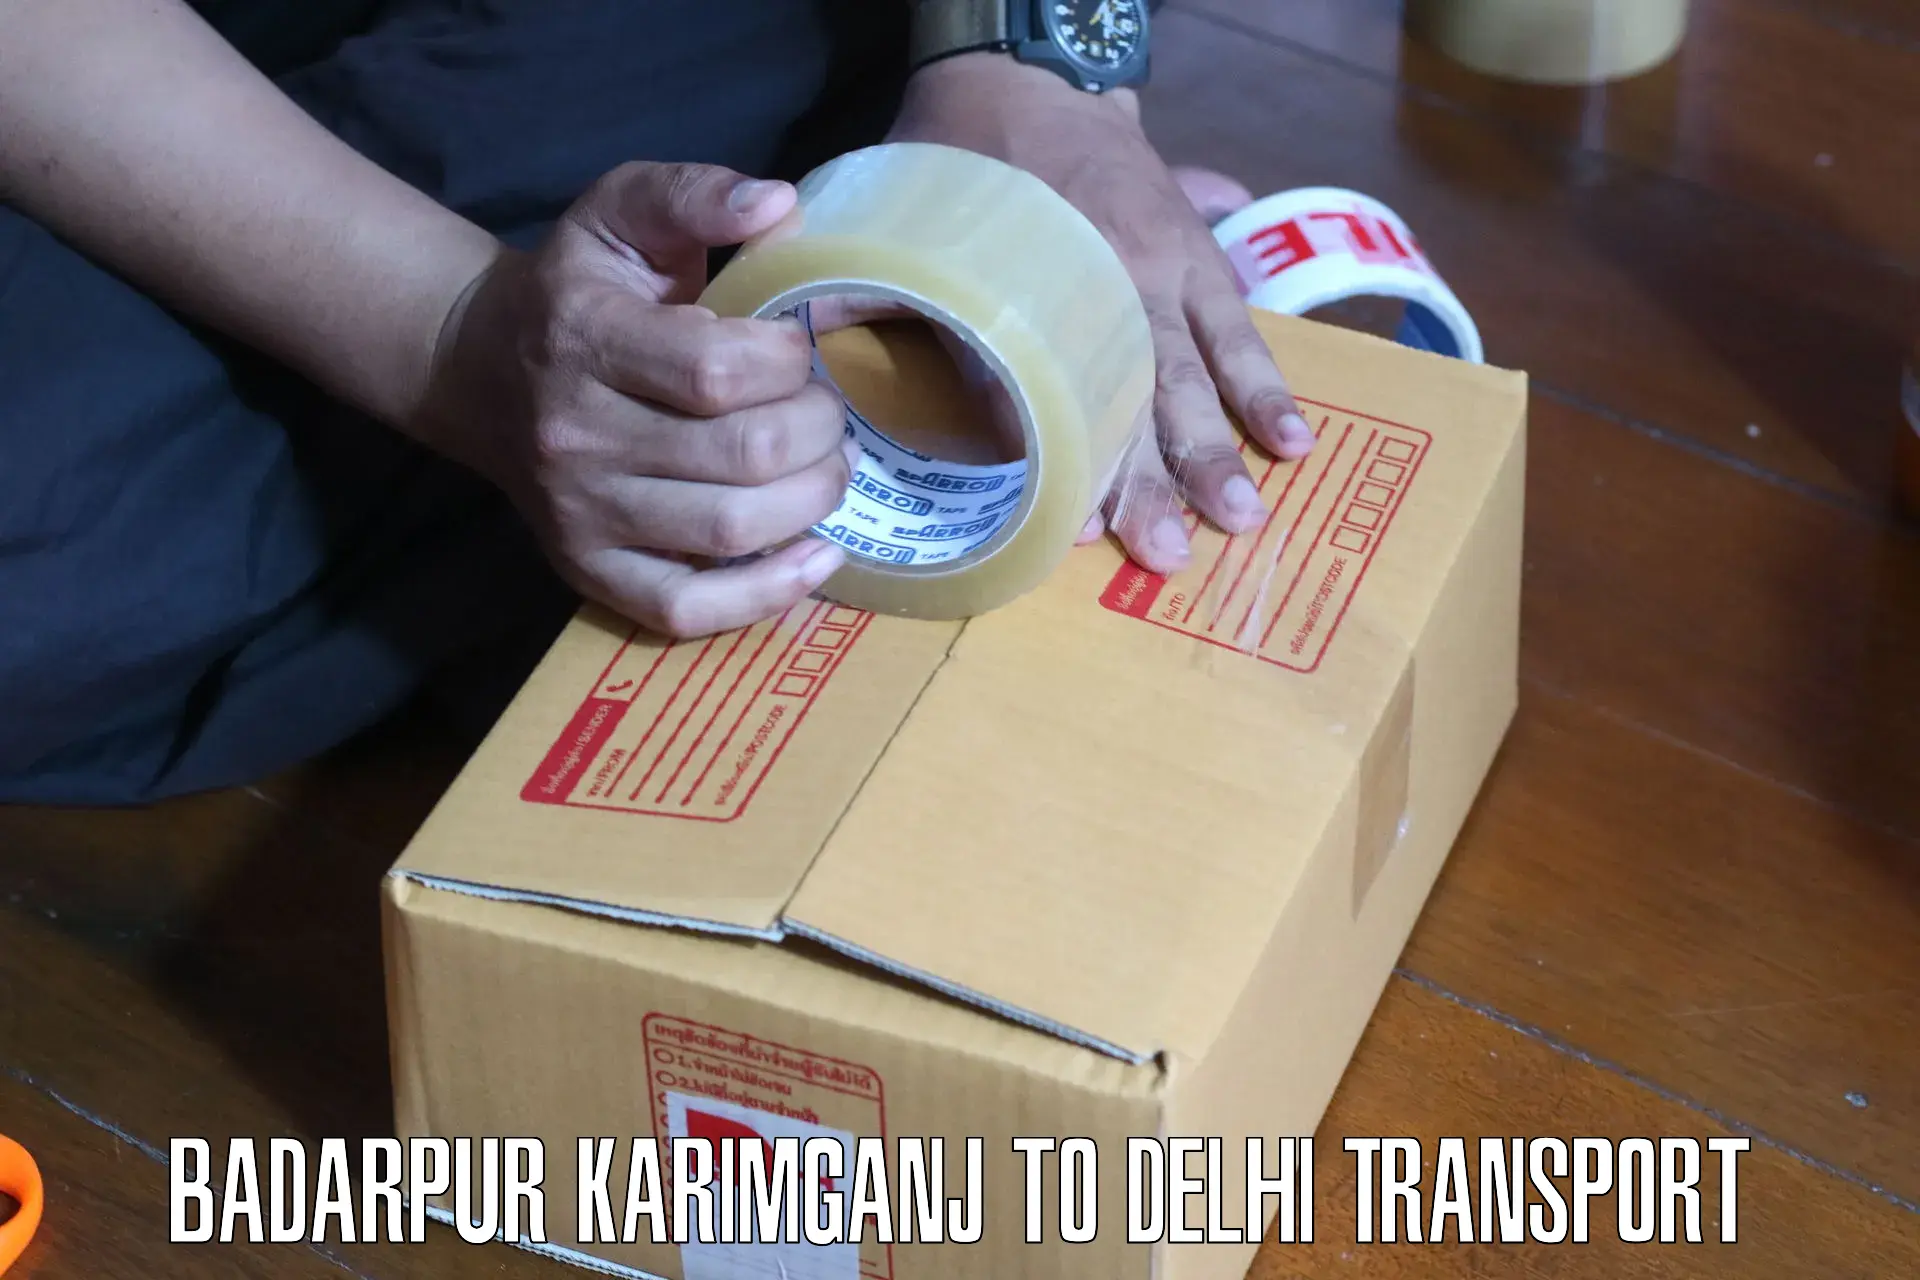 Road transport online services Badarpur Karimganj to Delhi Technological University DTU